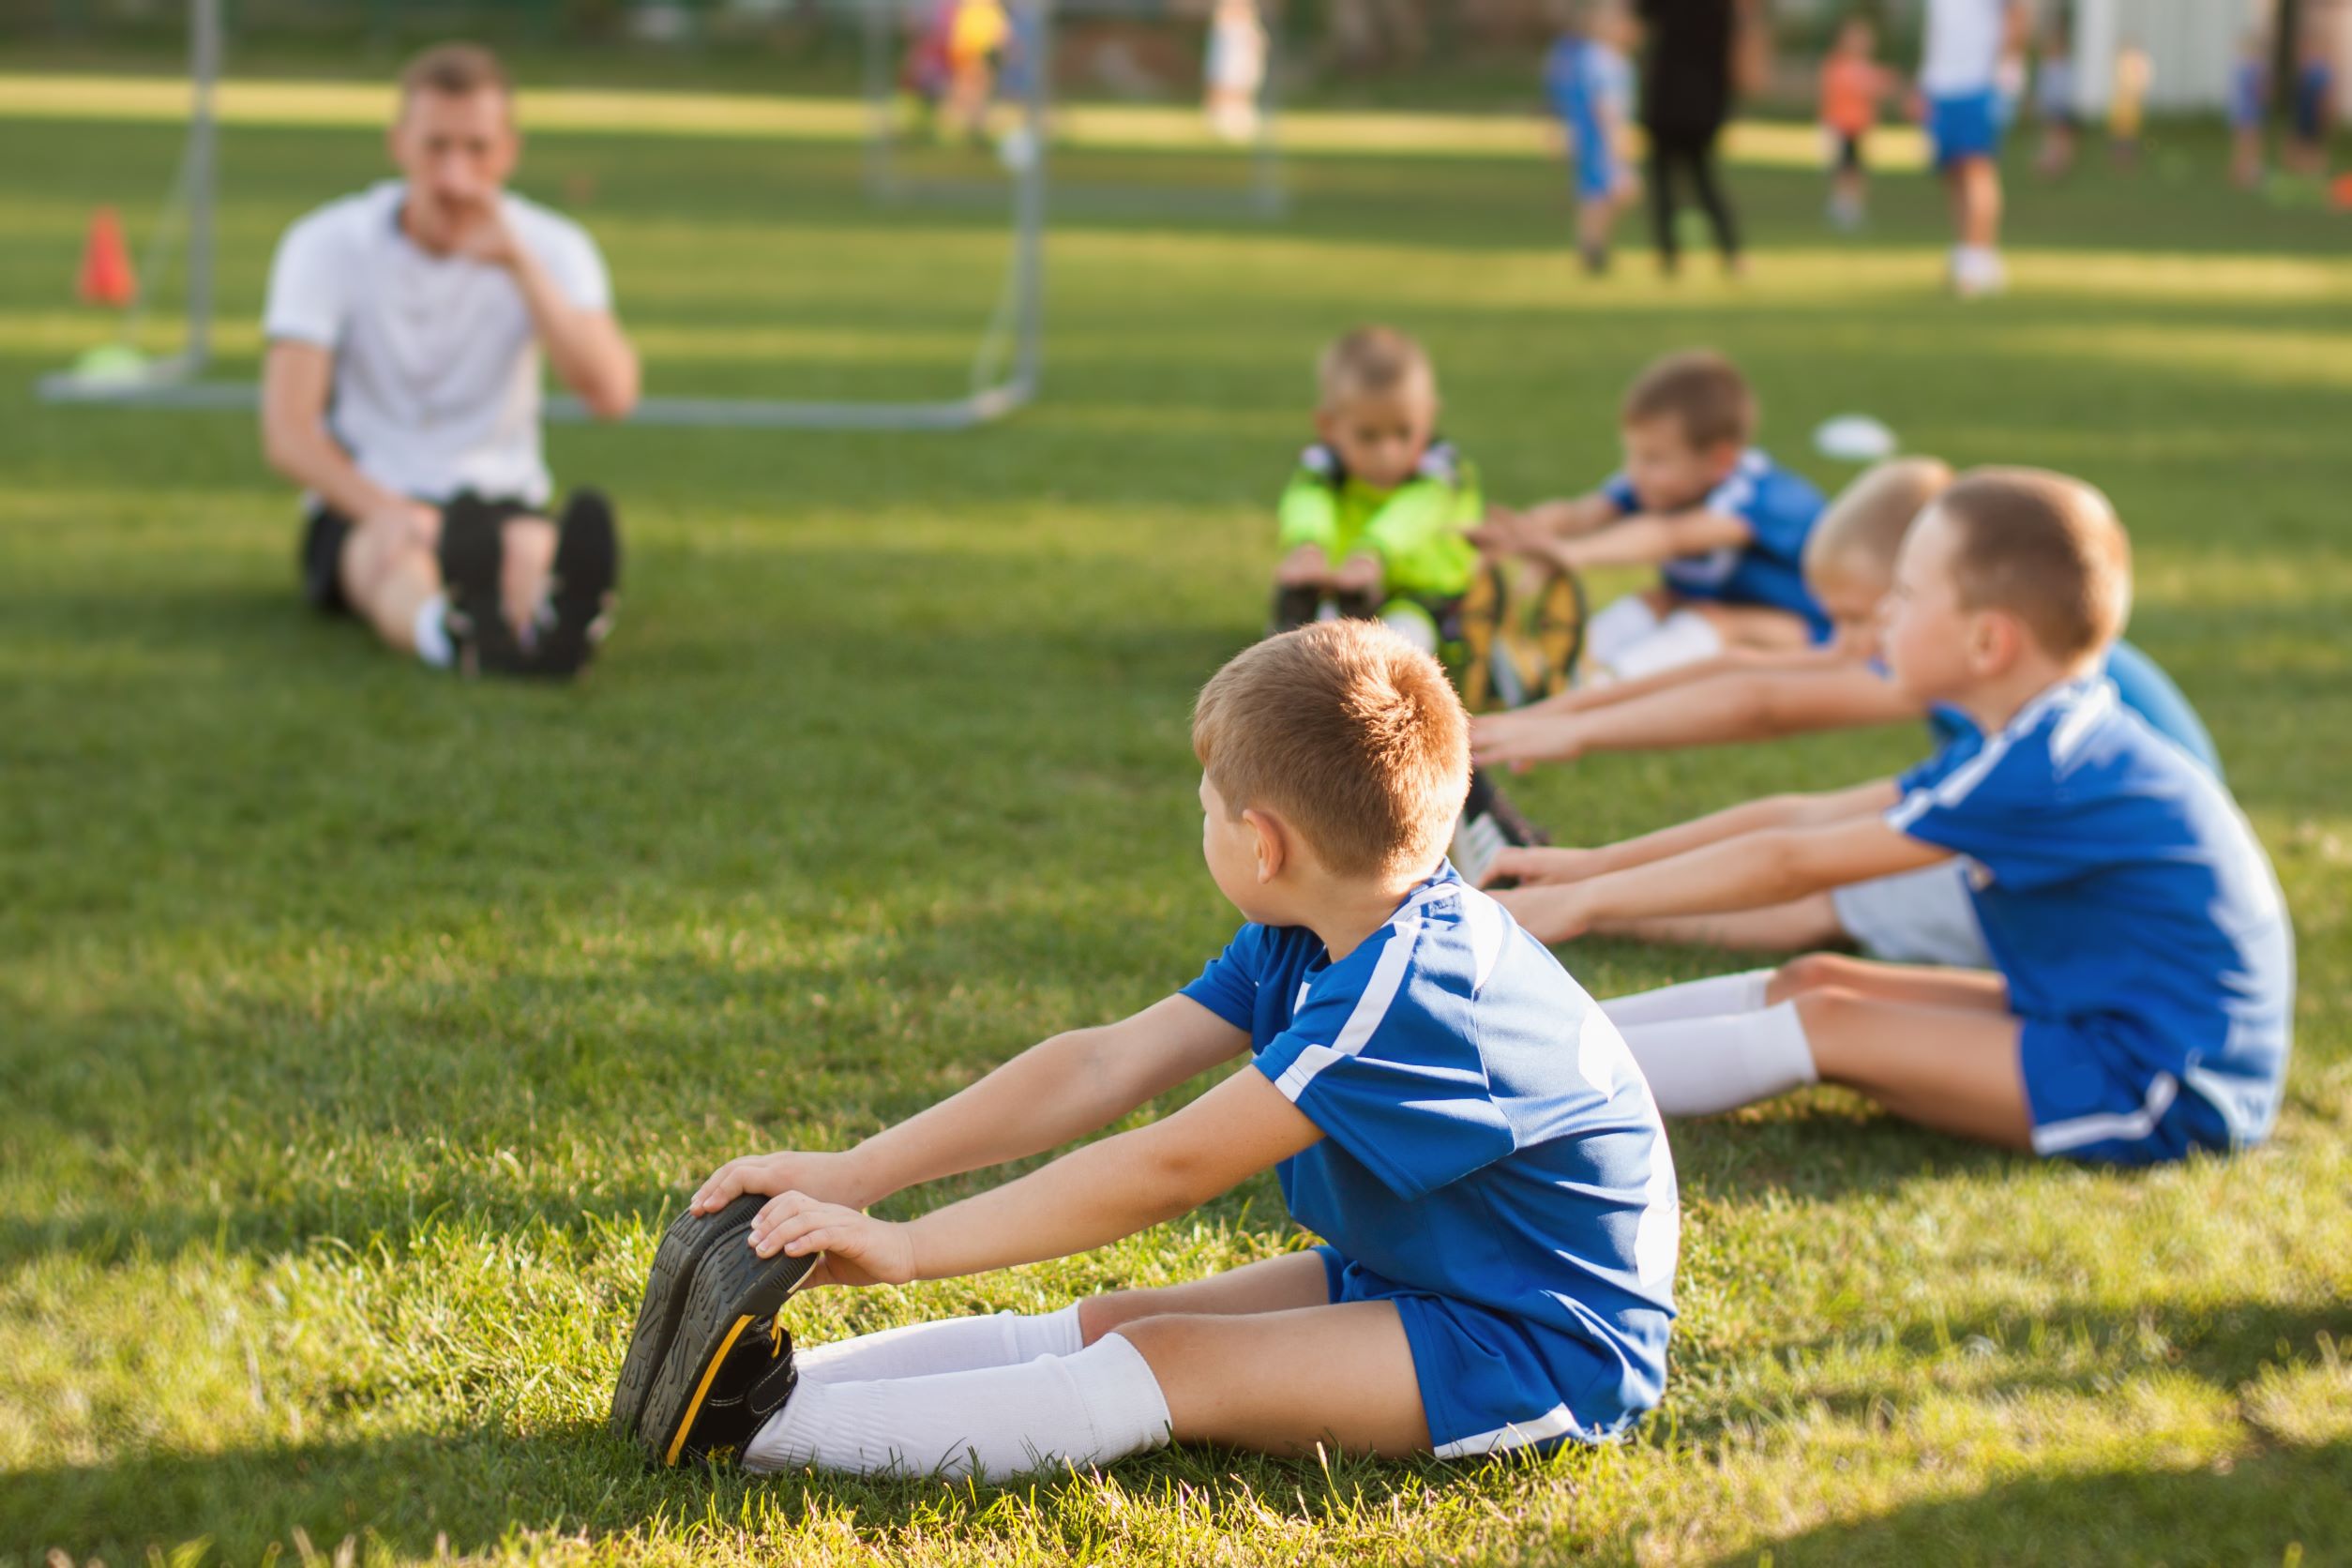 Δήμος Νέας Σμύρνης: ΄Εναρξη εγγραφών στο ποδόσφαιρο 5×5 για παιδιά